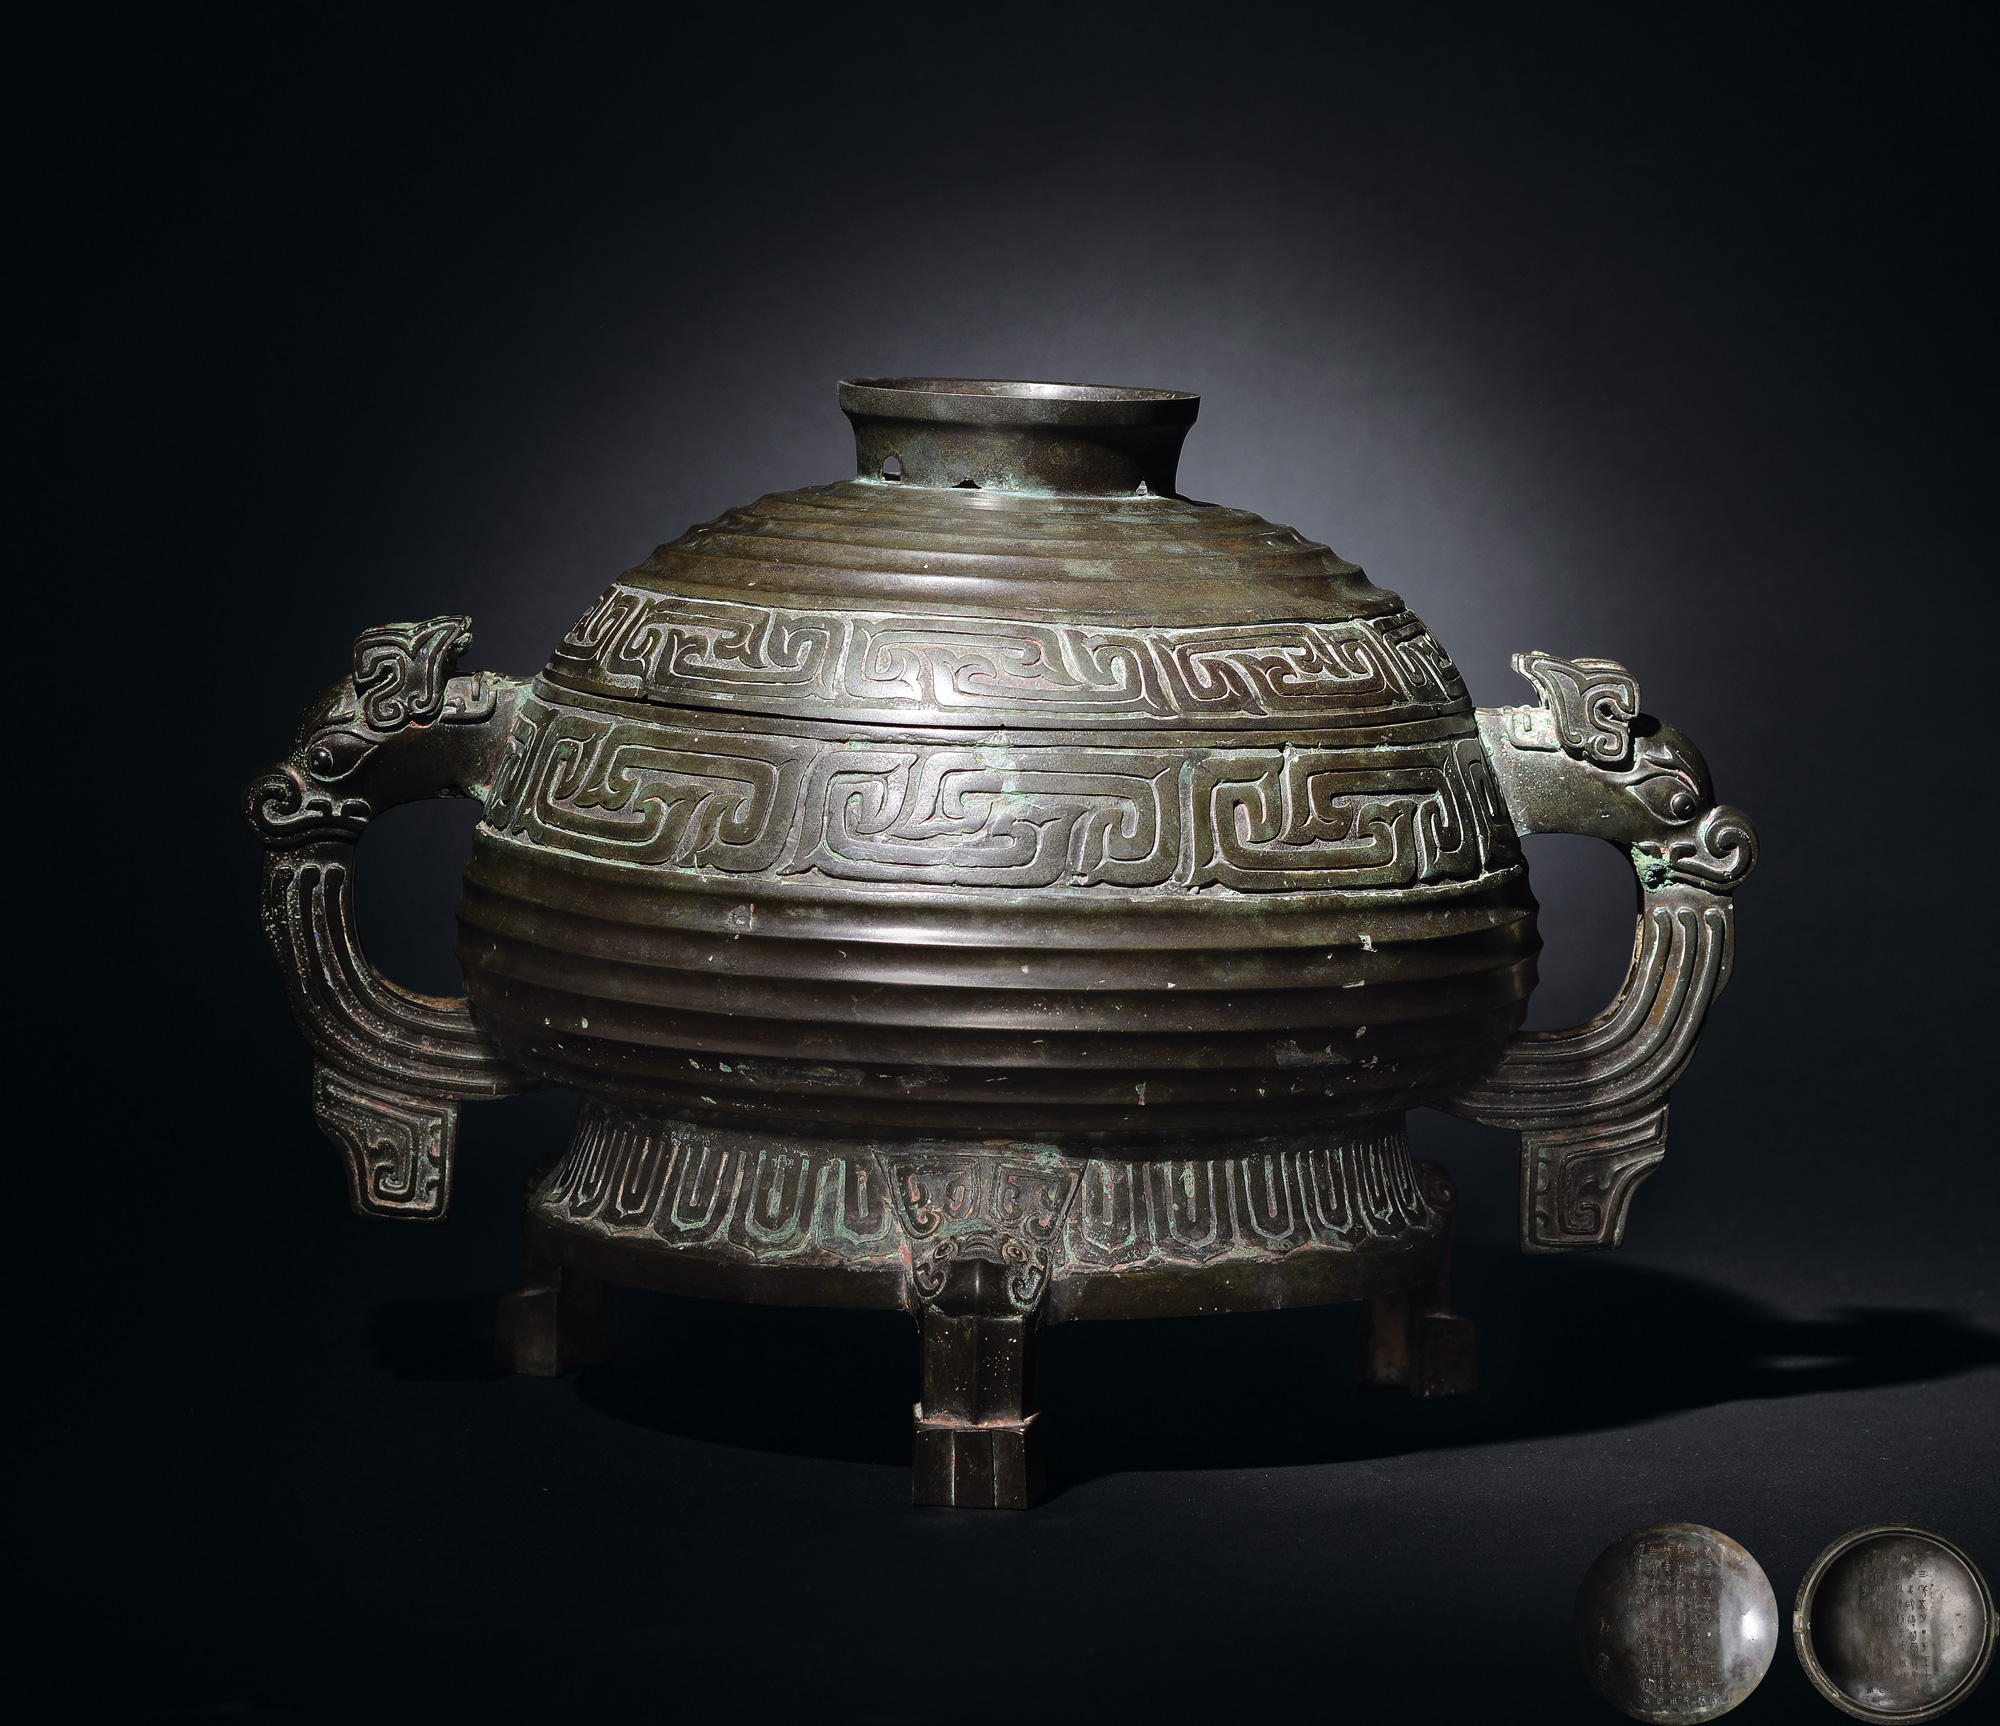 史颂簋拍品分类青铜器创作年代西周尺寸宽40cm估价rmb  12,000,000